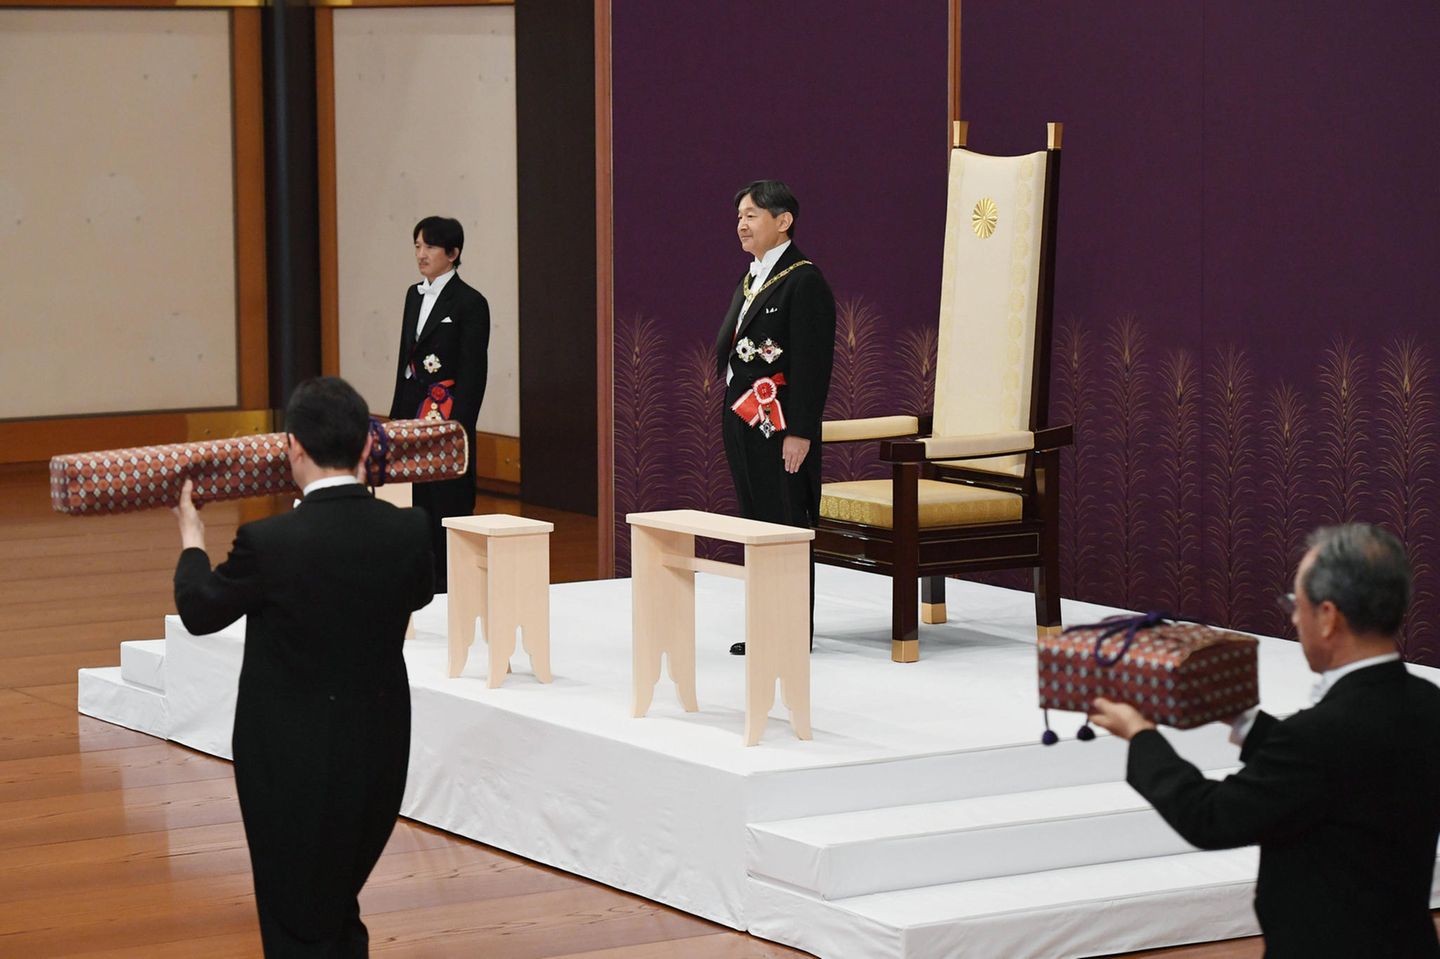 Bei der Zermonie empfängt Naruhito die kaiserlichen Insignien als neuer Kaiser von Japan. 